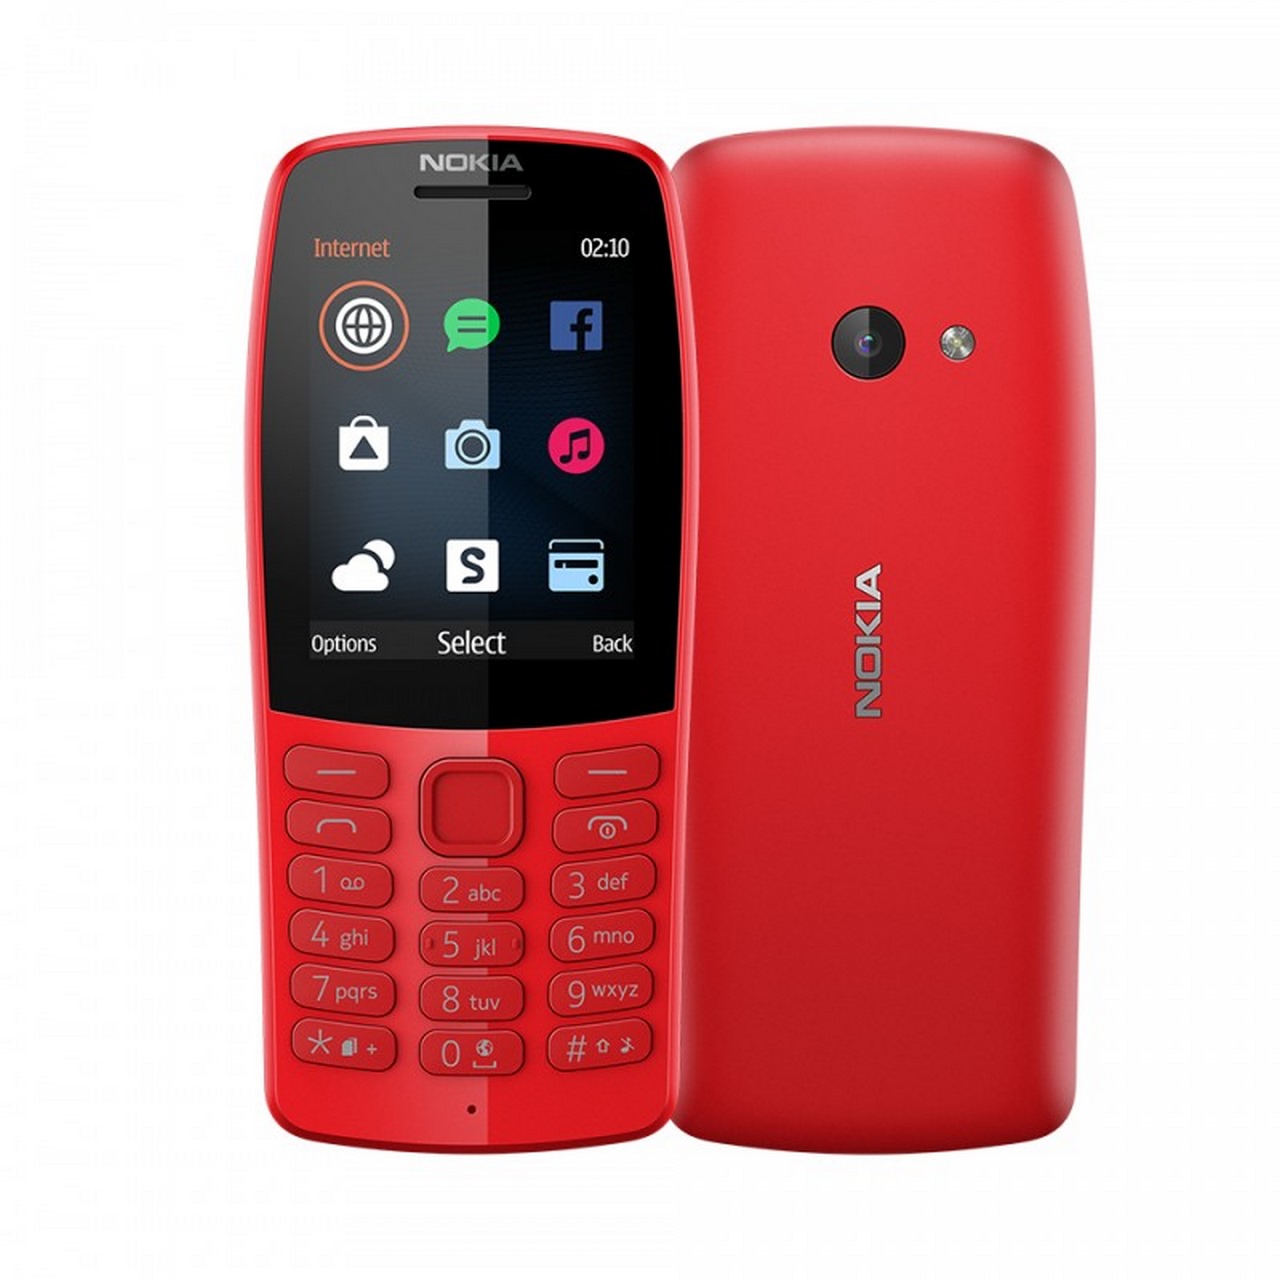 HMD trình làng “cục gạch” Nokia 210 tại Việt Nam: vào được mạng, Facebook,  có sẵn Snake, giá gần 800 nghìn đồng